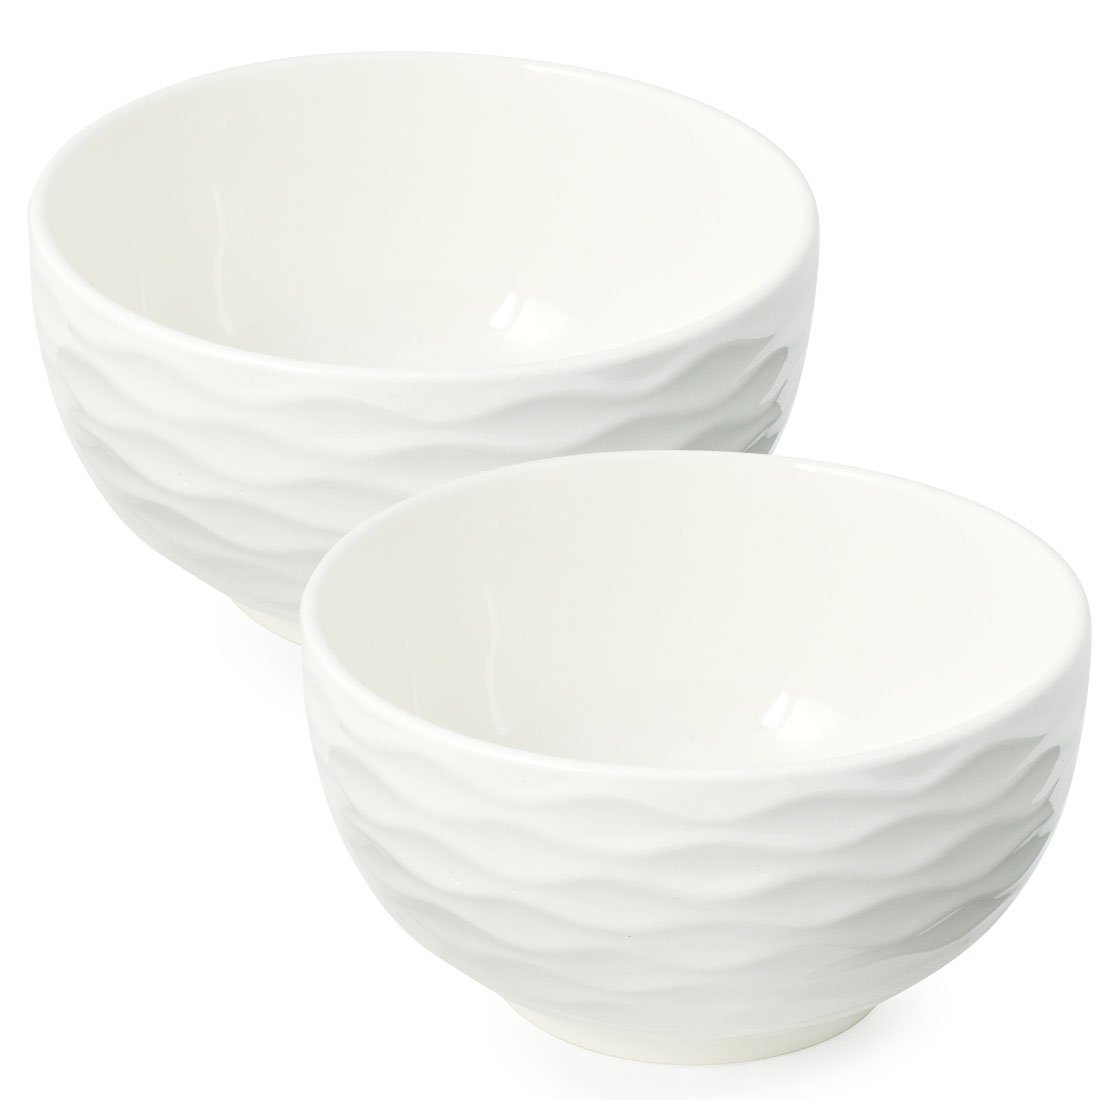 Bowl Tigela de Porcelana Branco 400ml Kit com 2 Peças